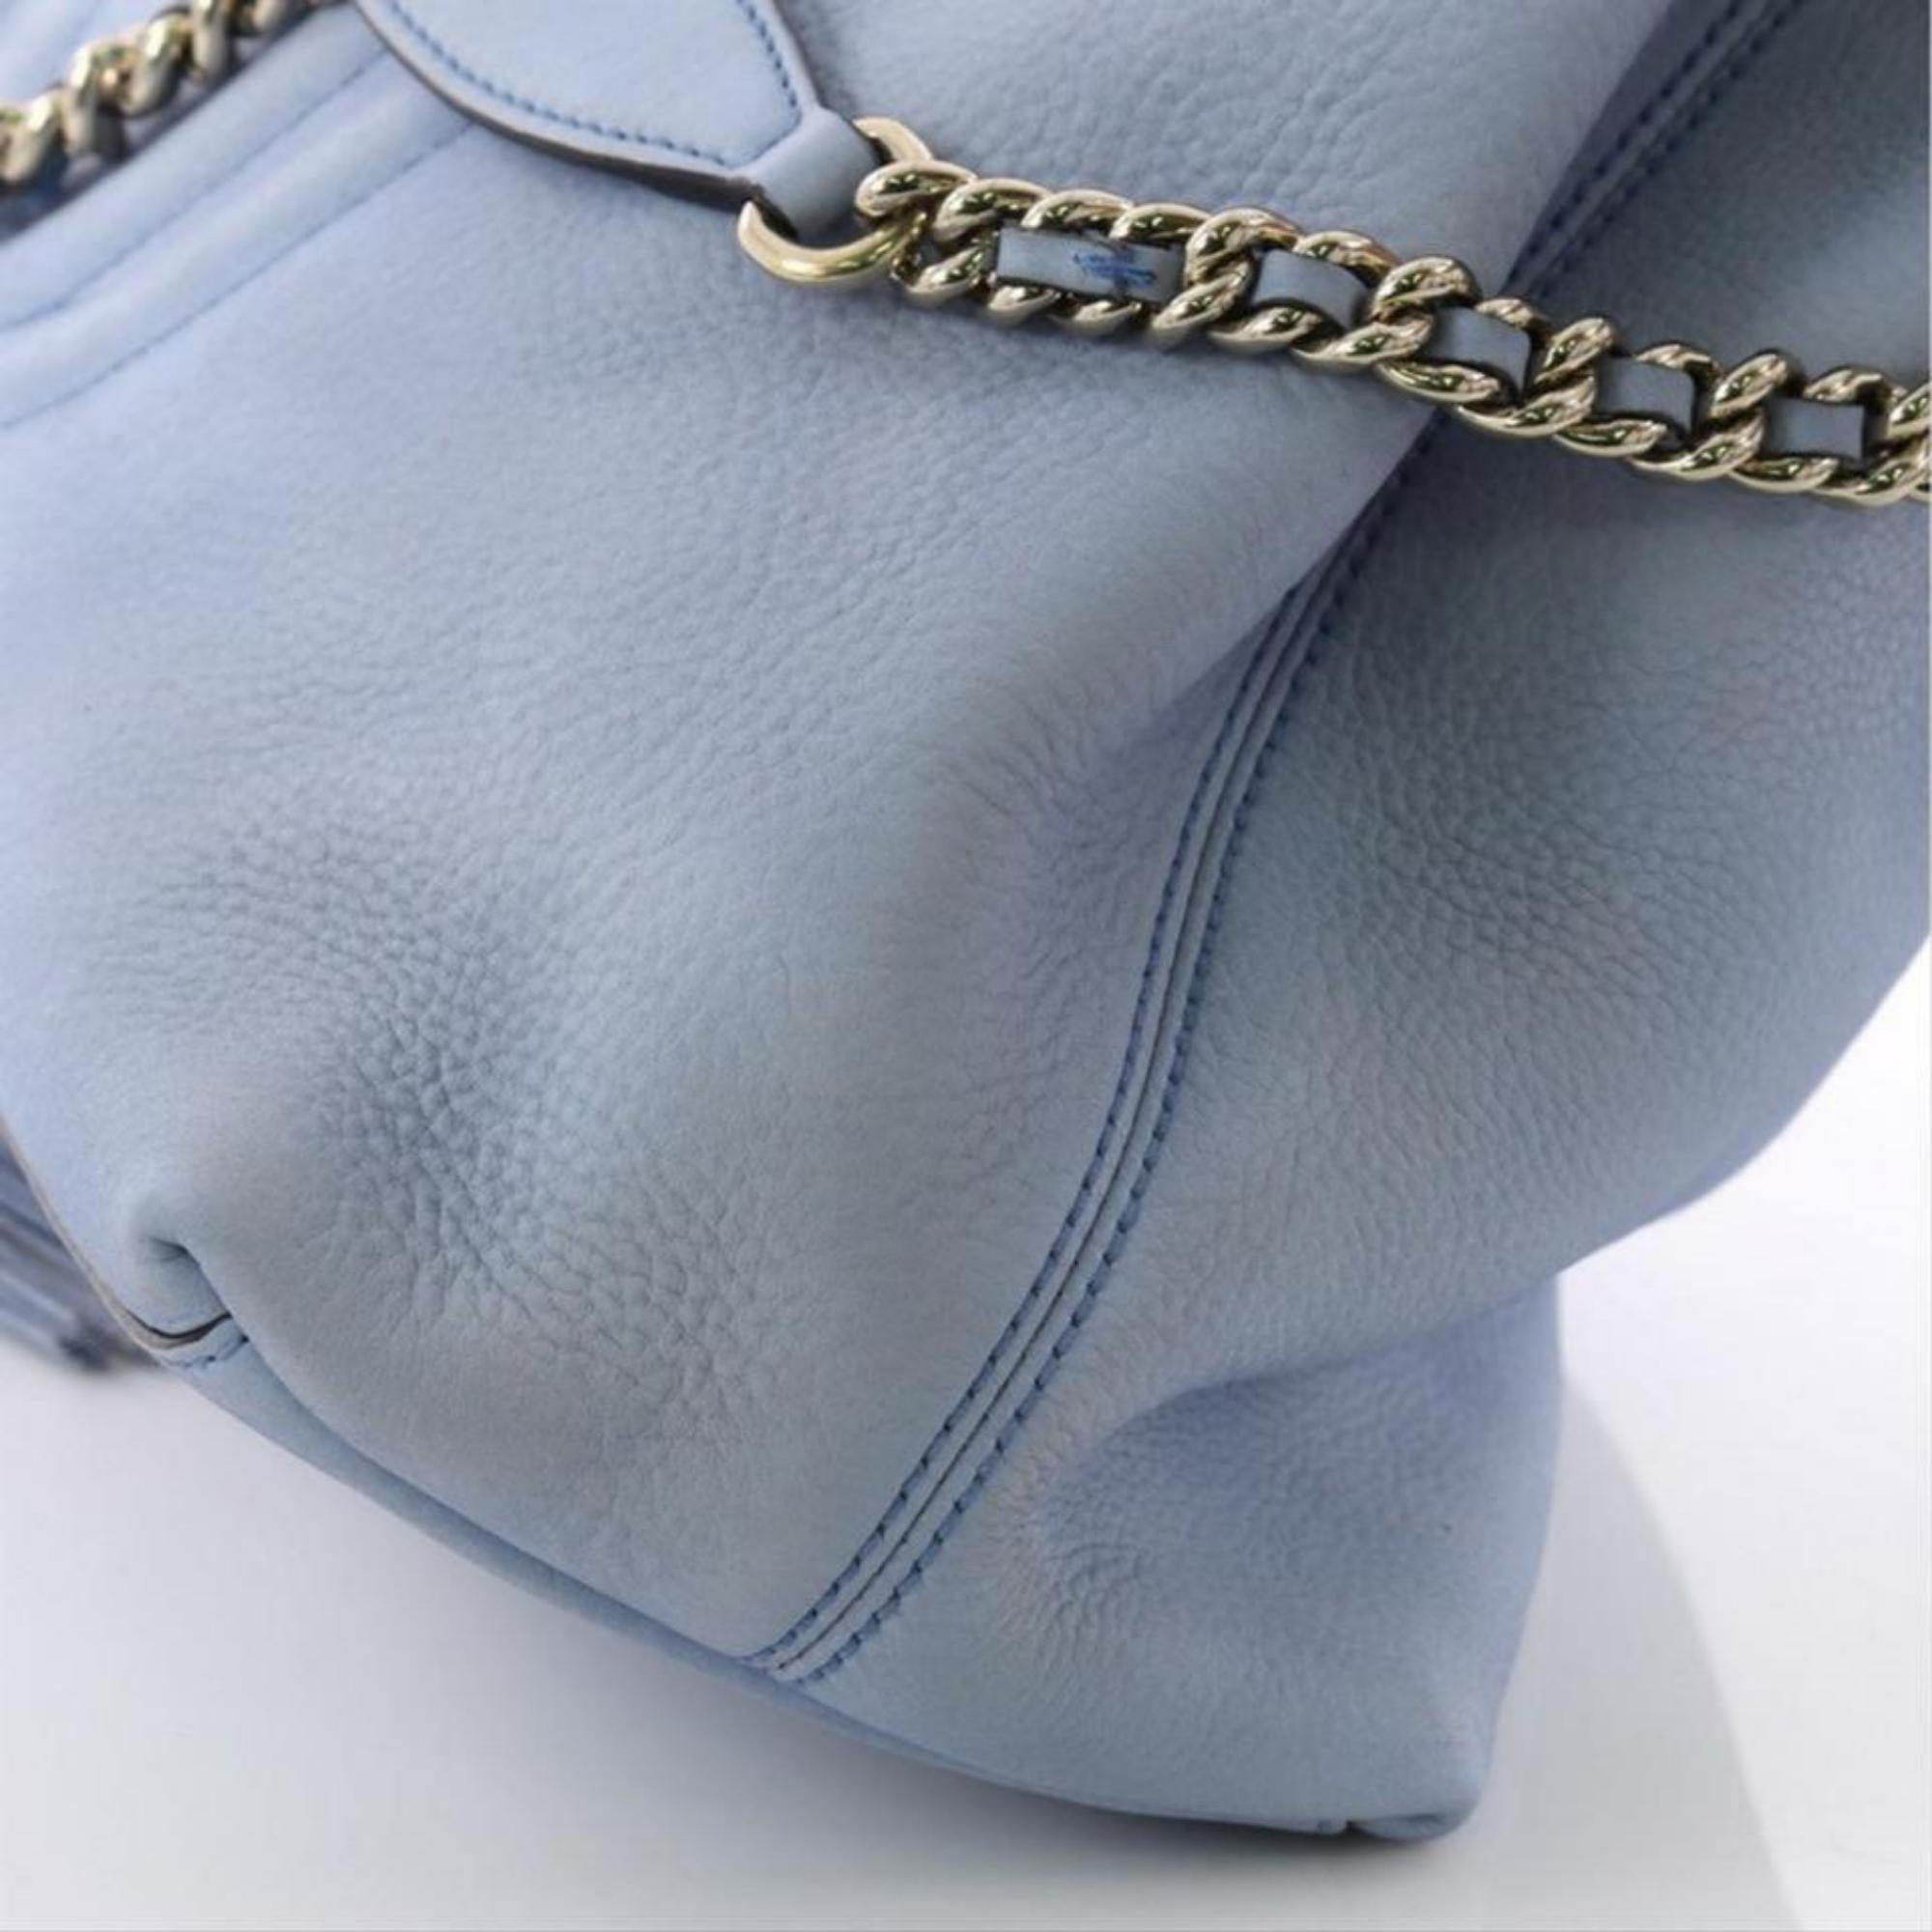 Gucci Soho Fringe Tassel Chain Tote 869083 Light Blue Leather Shoulder Bag For Sale 4